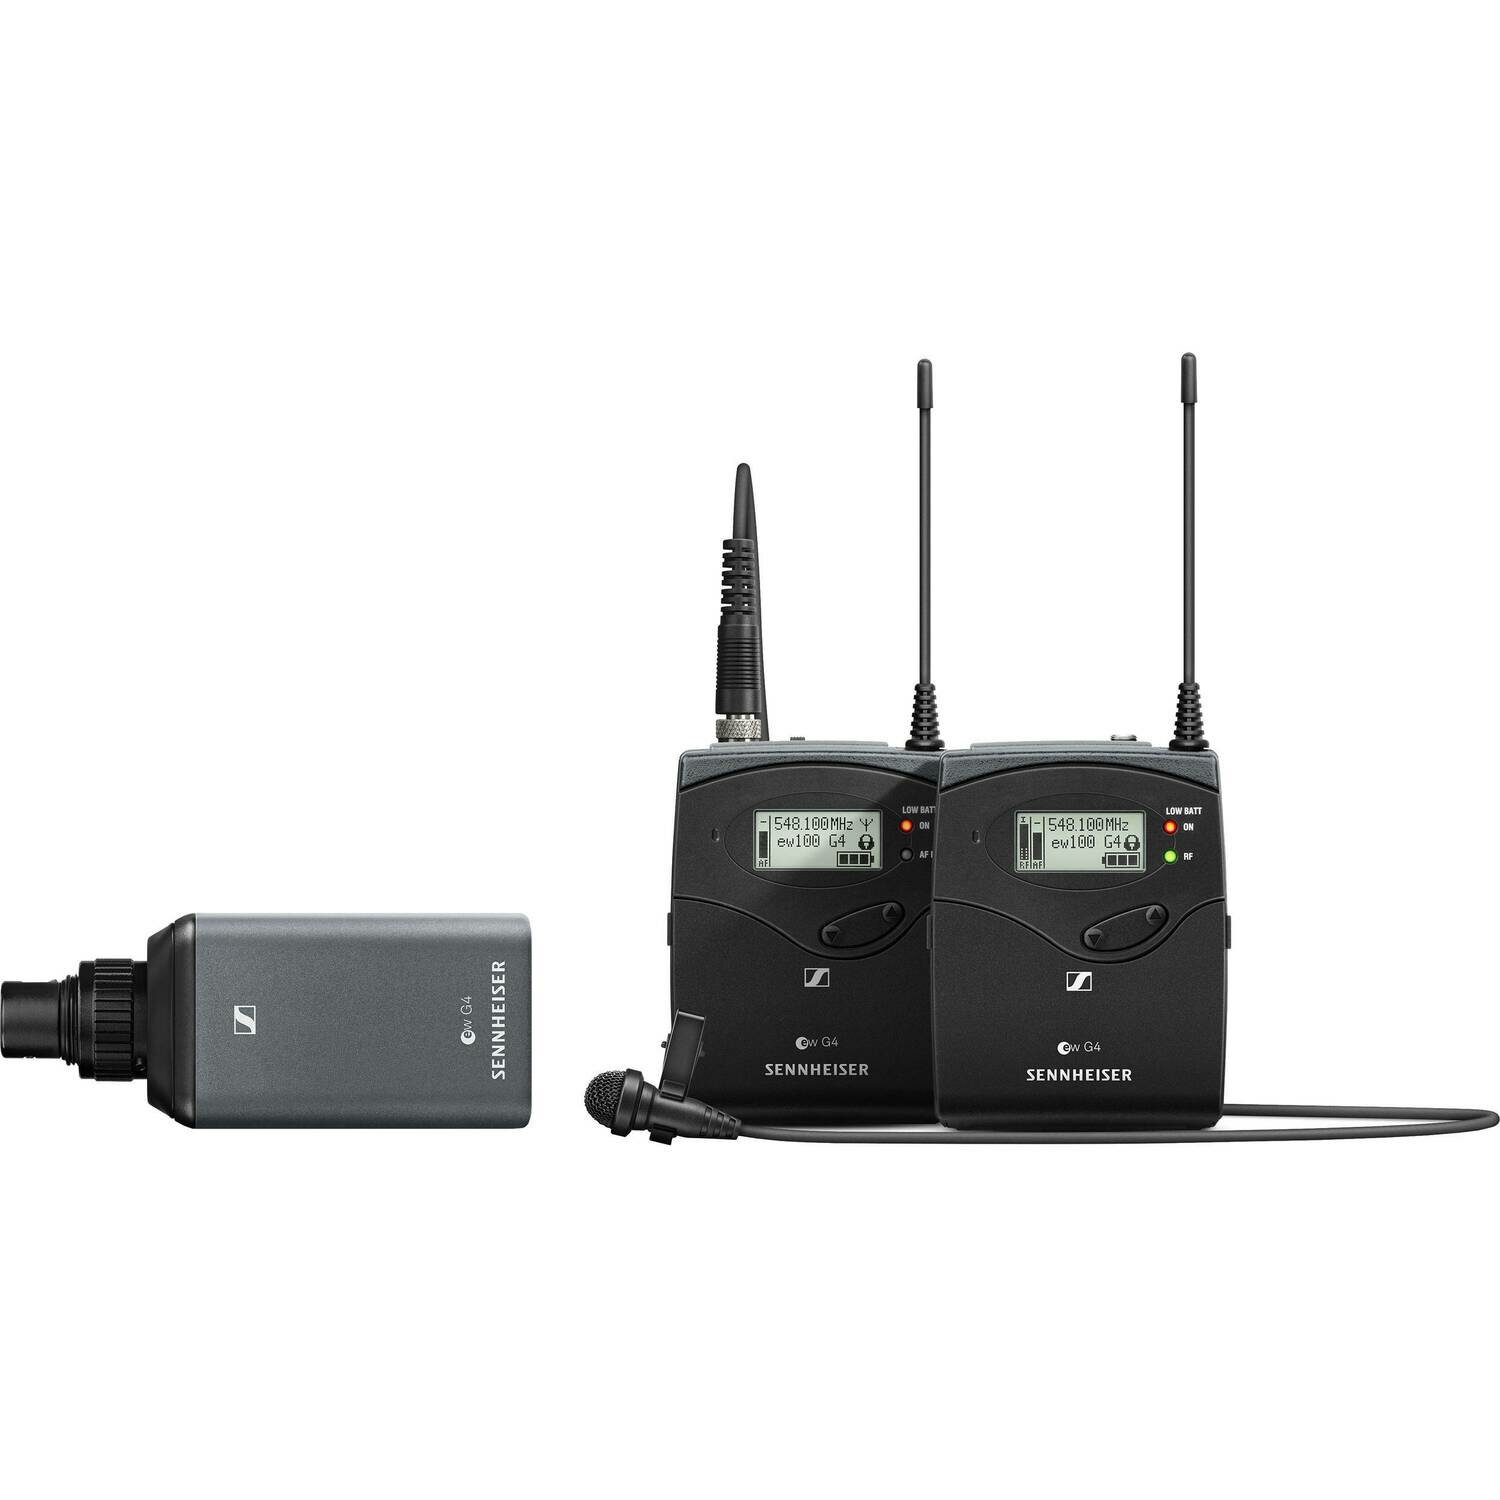 Sennheiser EW 100 ENG G4 Camera-Mount Wireless Combo Microphone System (A1: 470 to 516 MHz)
#SEEW100EG4A1 MFR #EW 100 ENG G4-A1